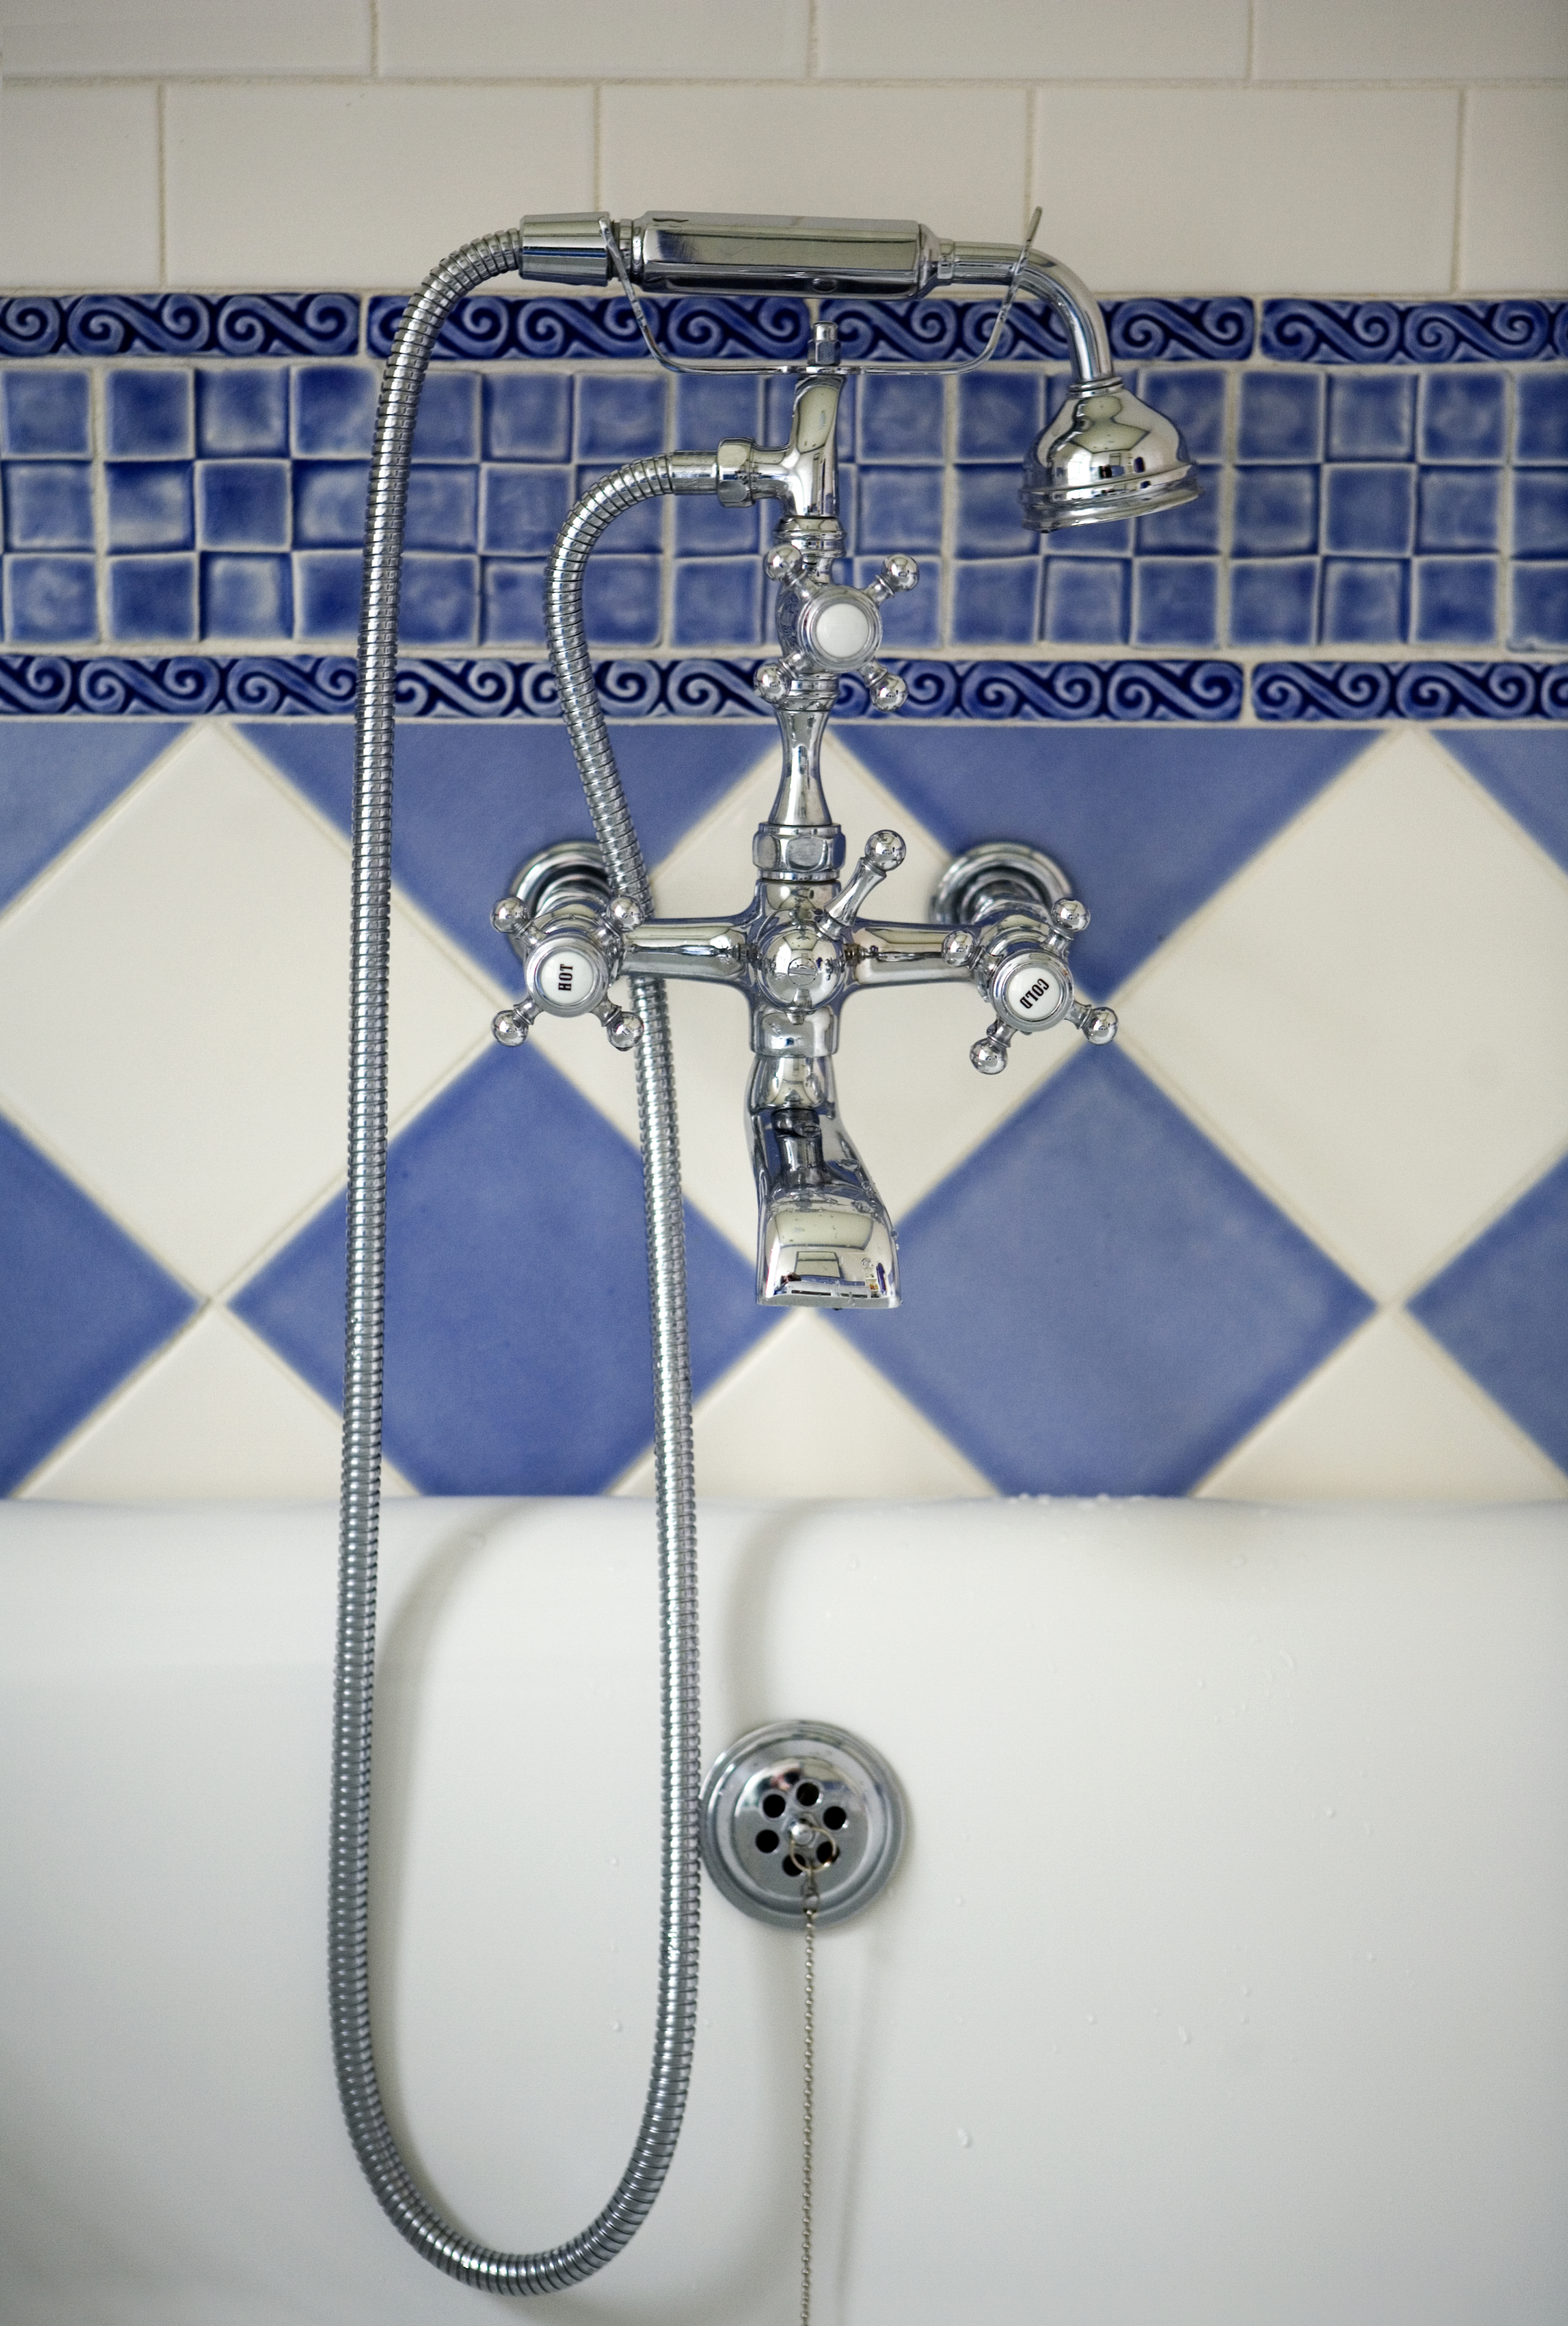 Heidi Pribell Blue bathroom tub faucet detail 1